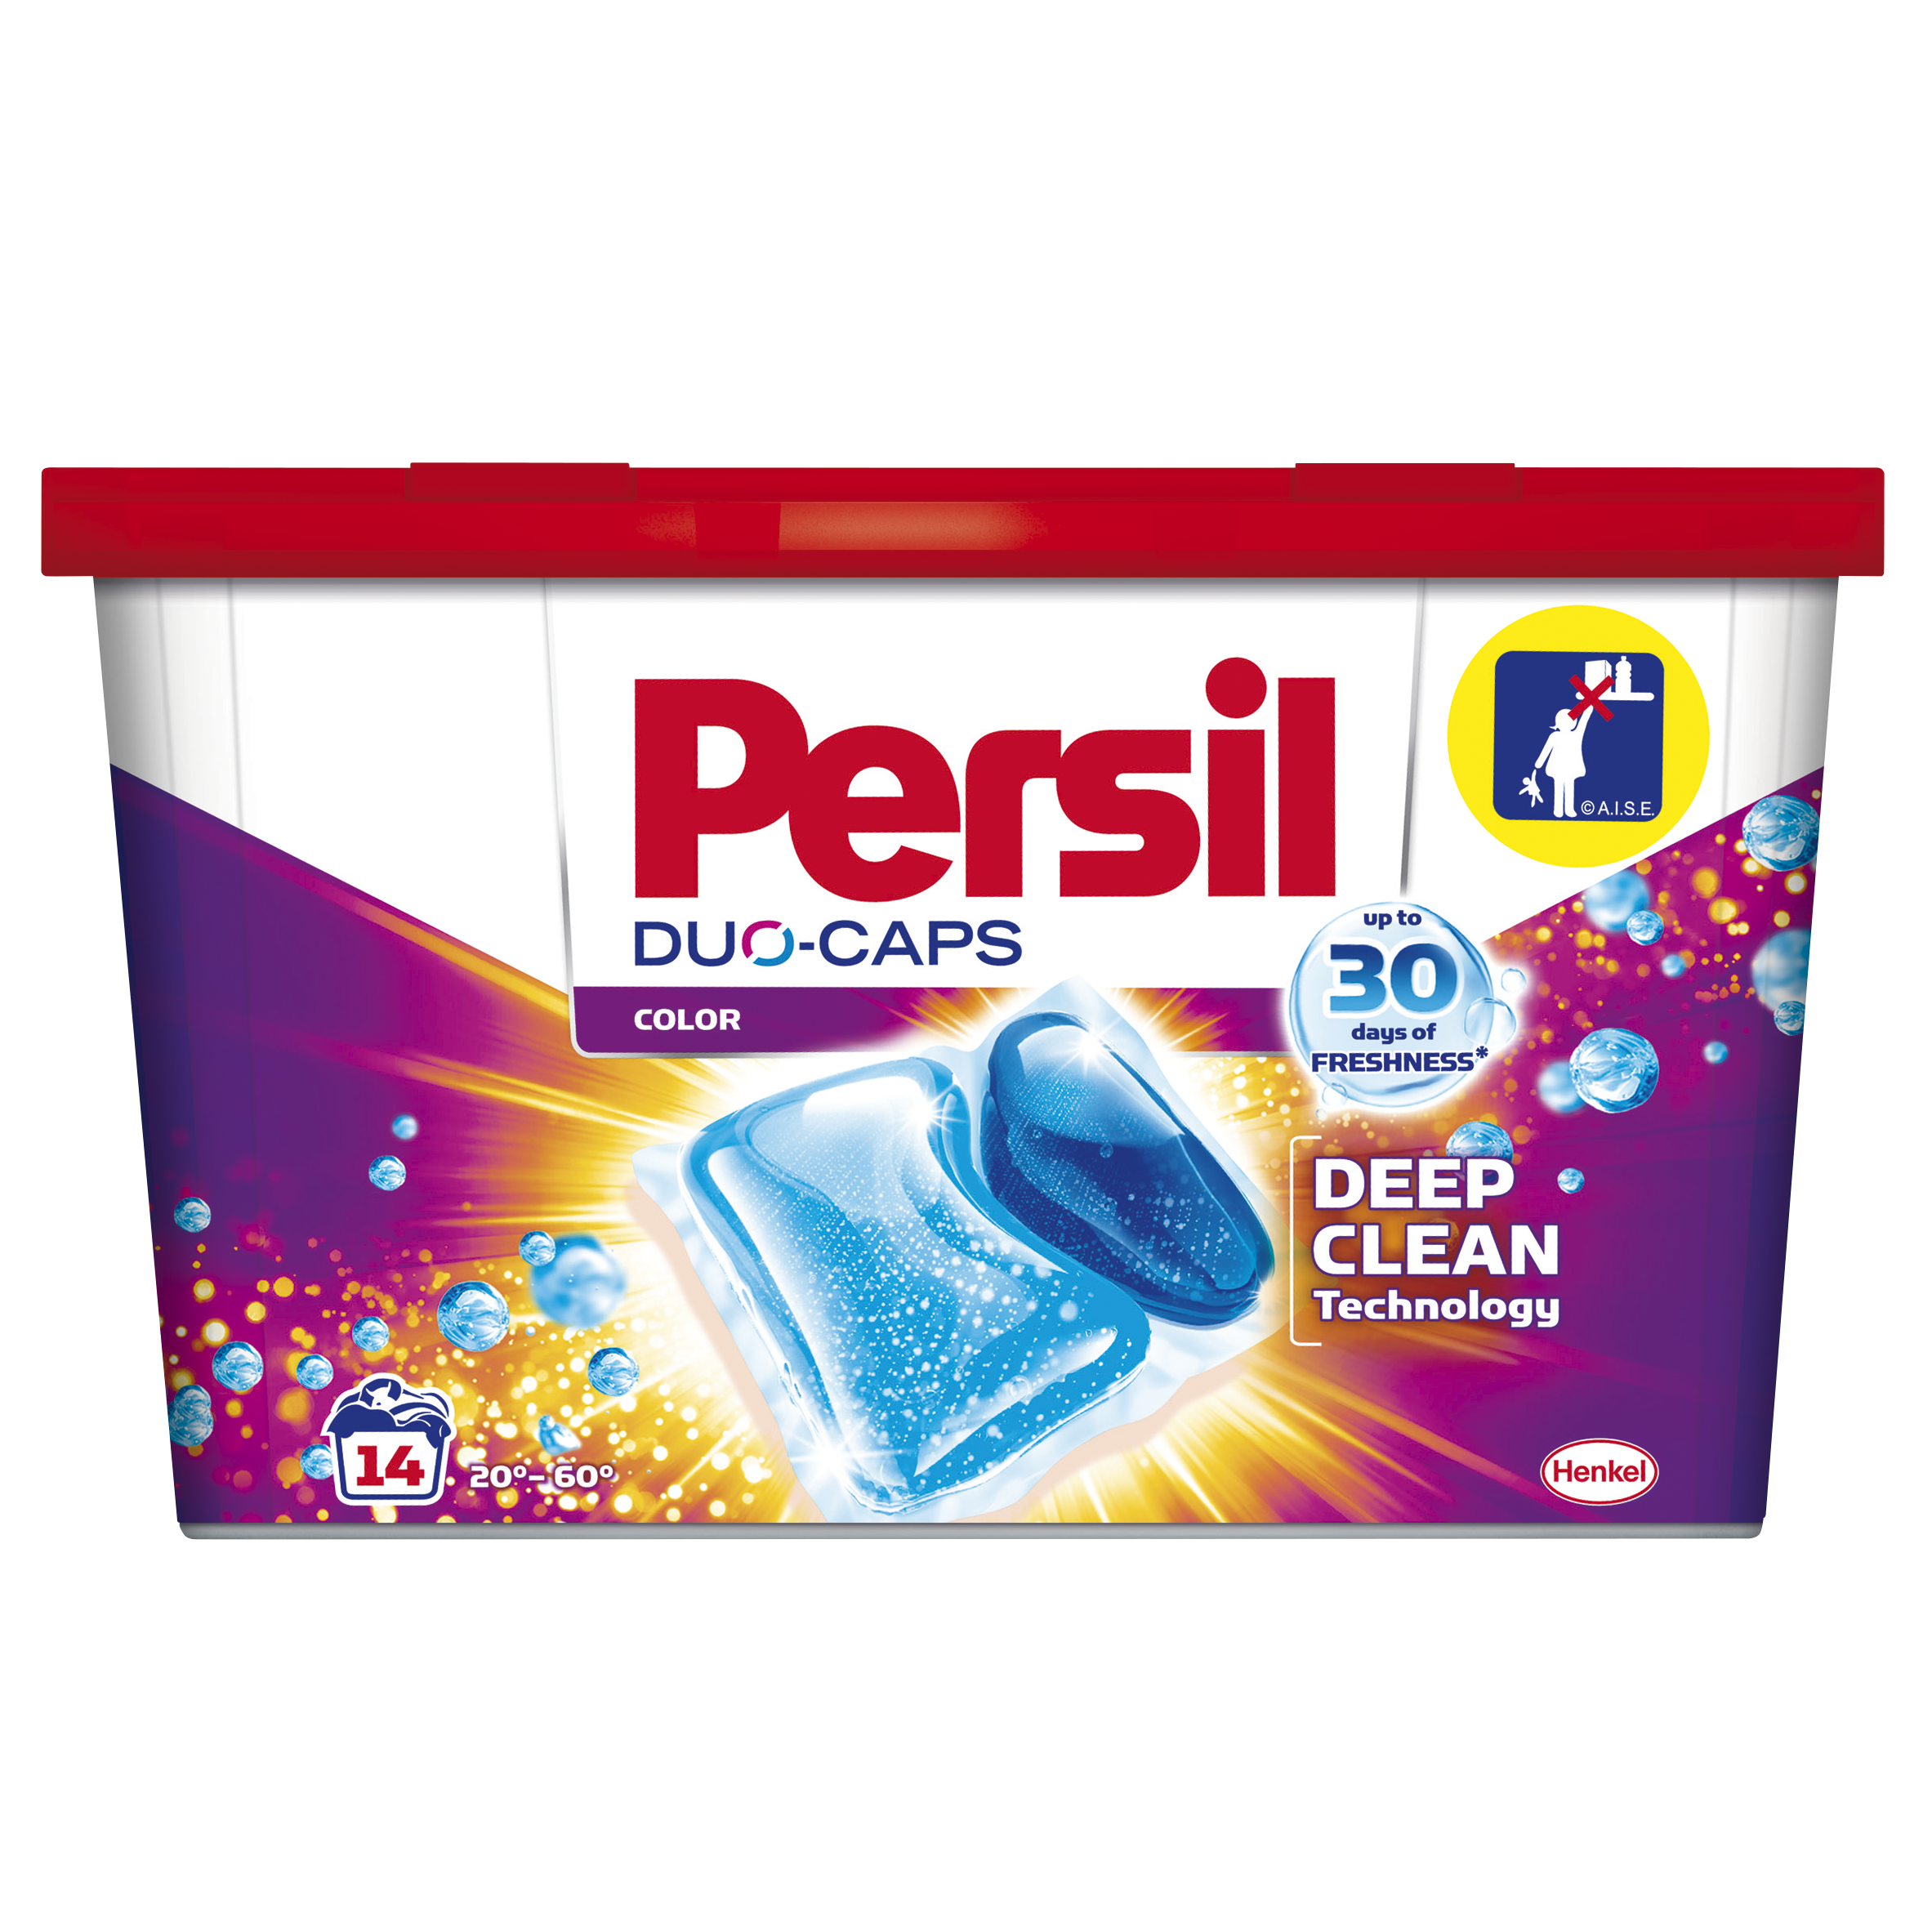 Дуо-капсули для прання Persil Color, 14 шт. (737015) - фото 1